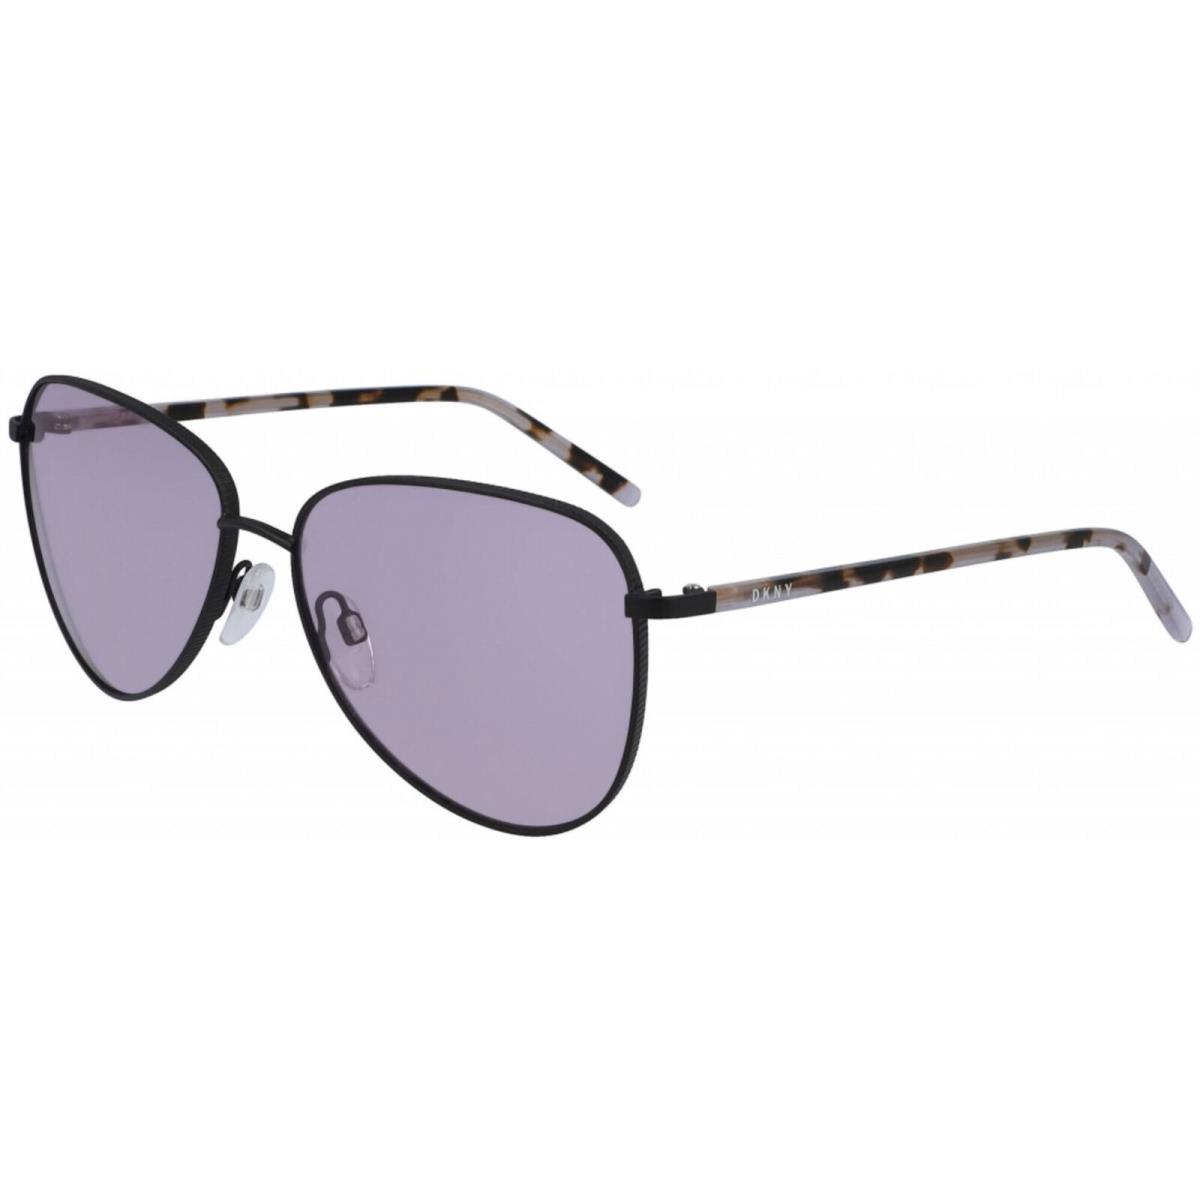 Dkny Women`s Sunglasses Purple Metal Full Rim Butterfly Frame Dkny DK301S 515